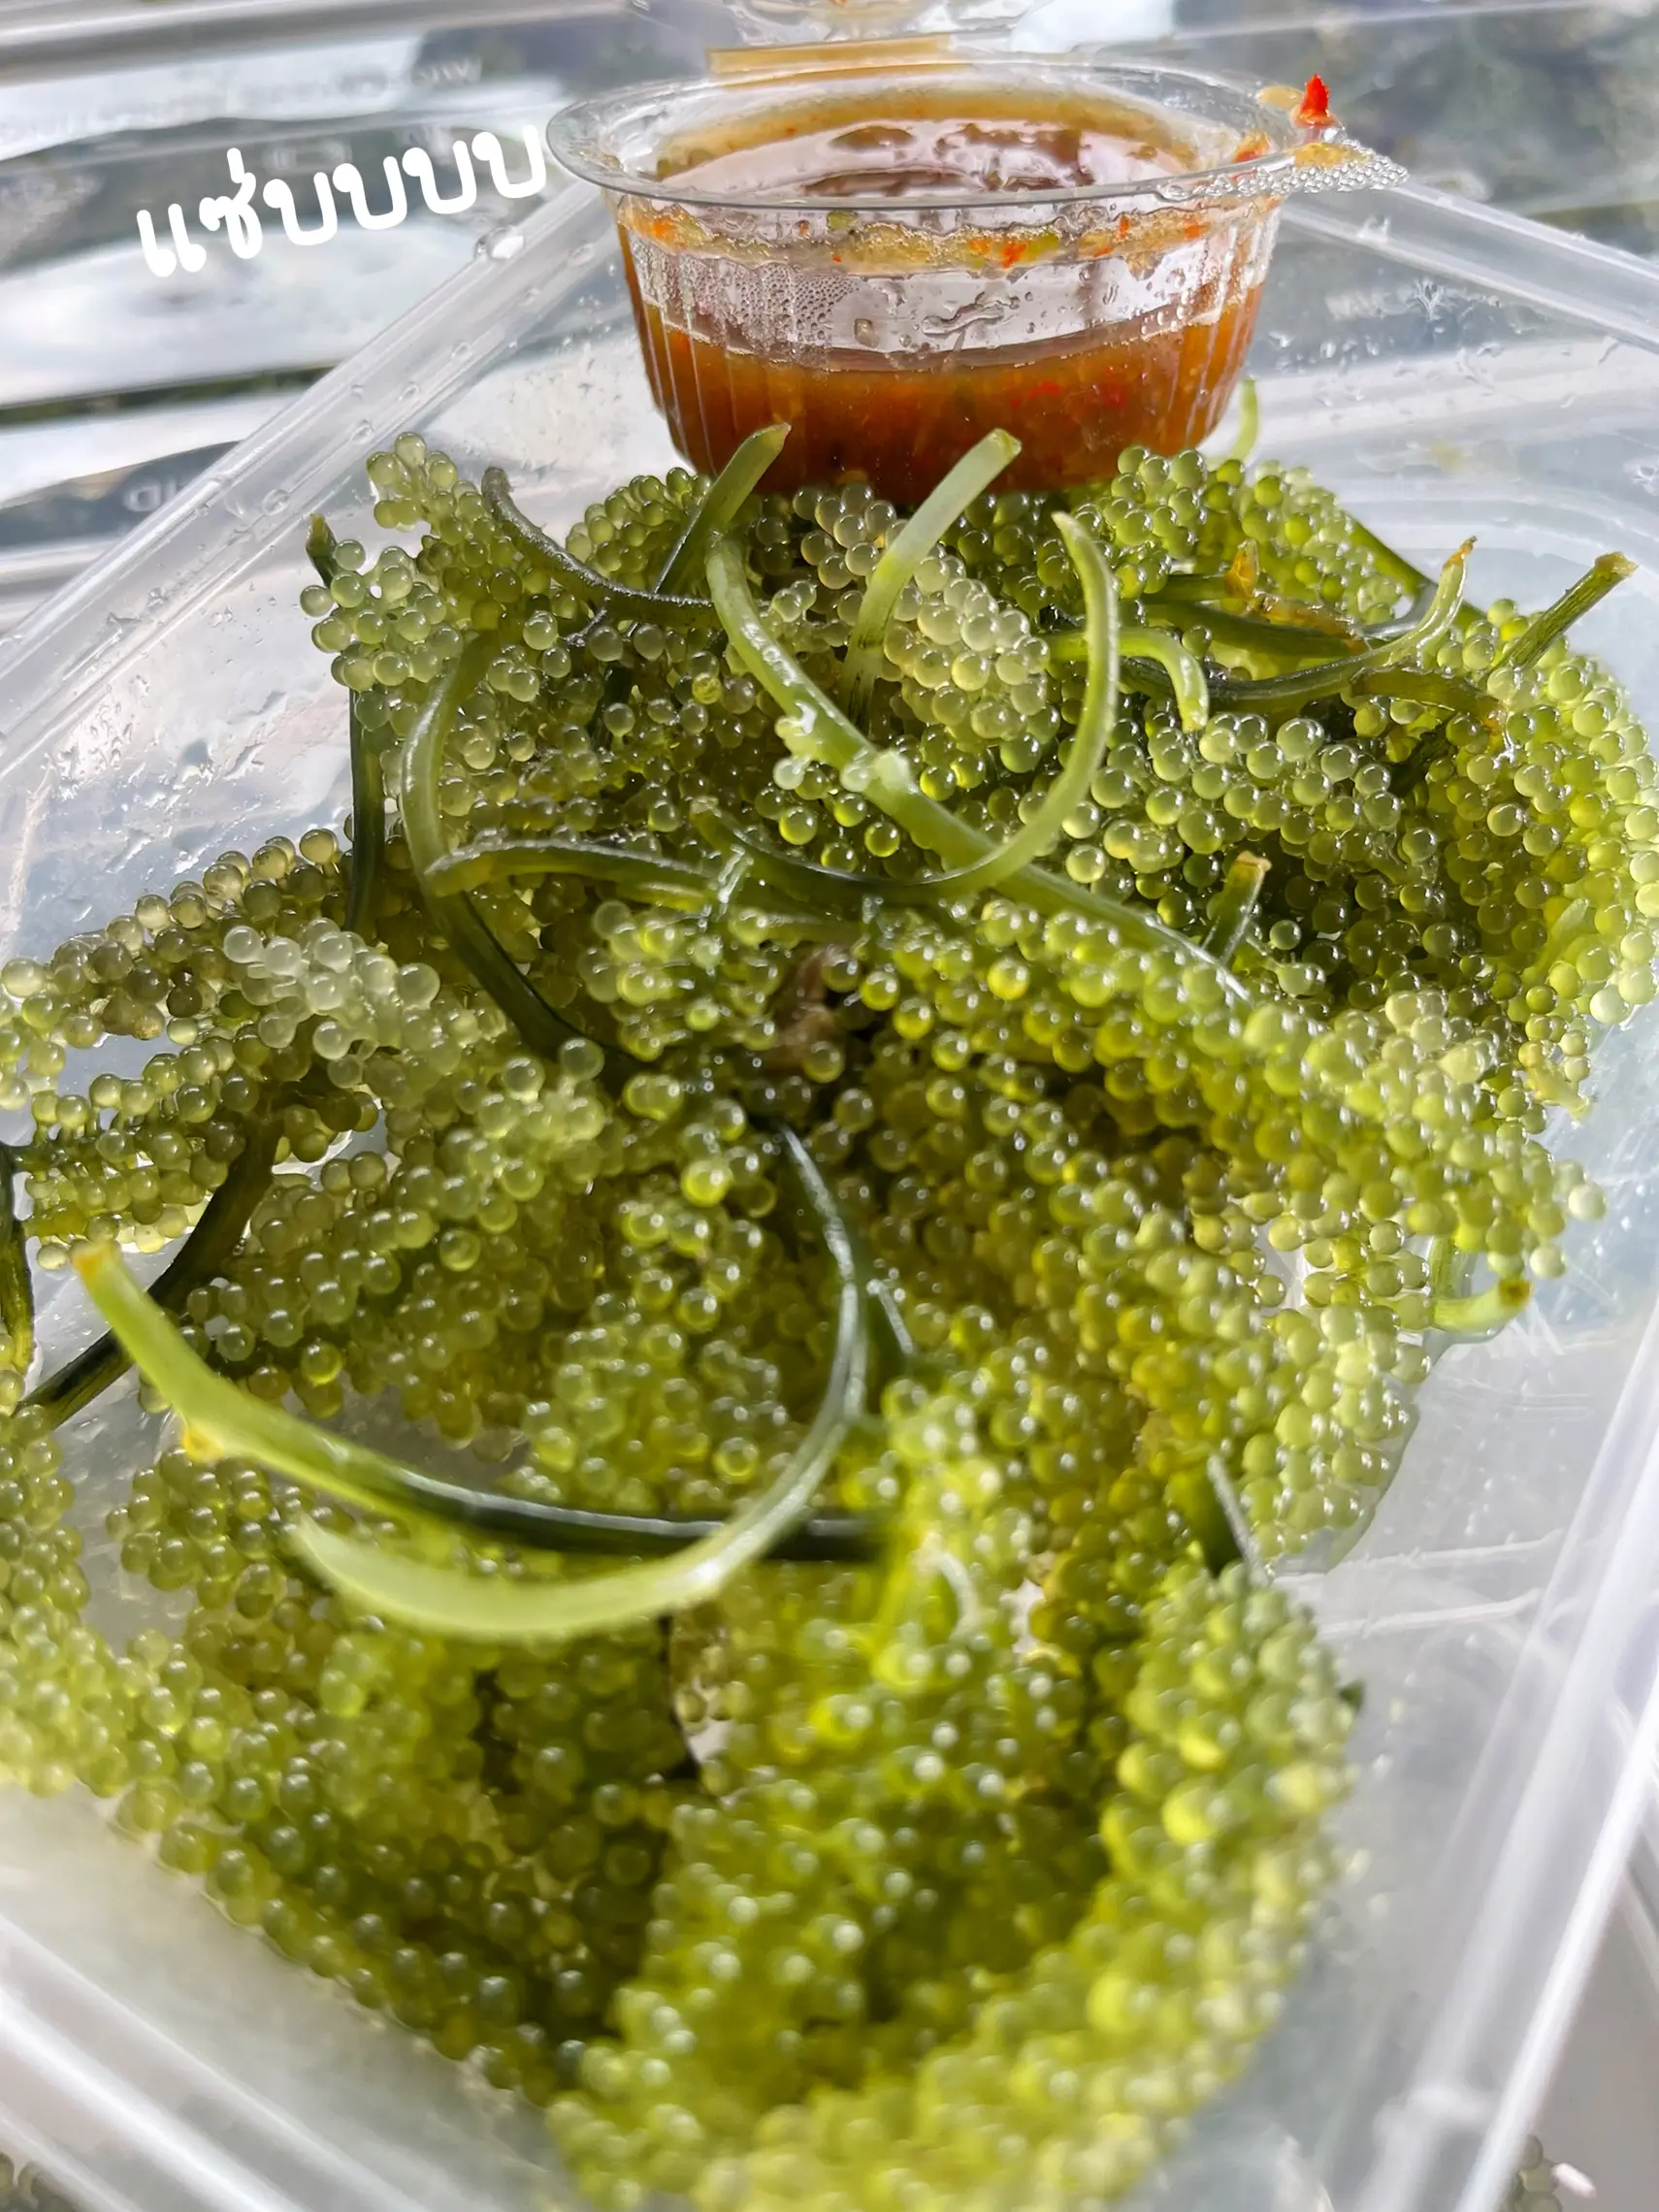 Pickled food - Lifesum